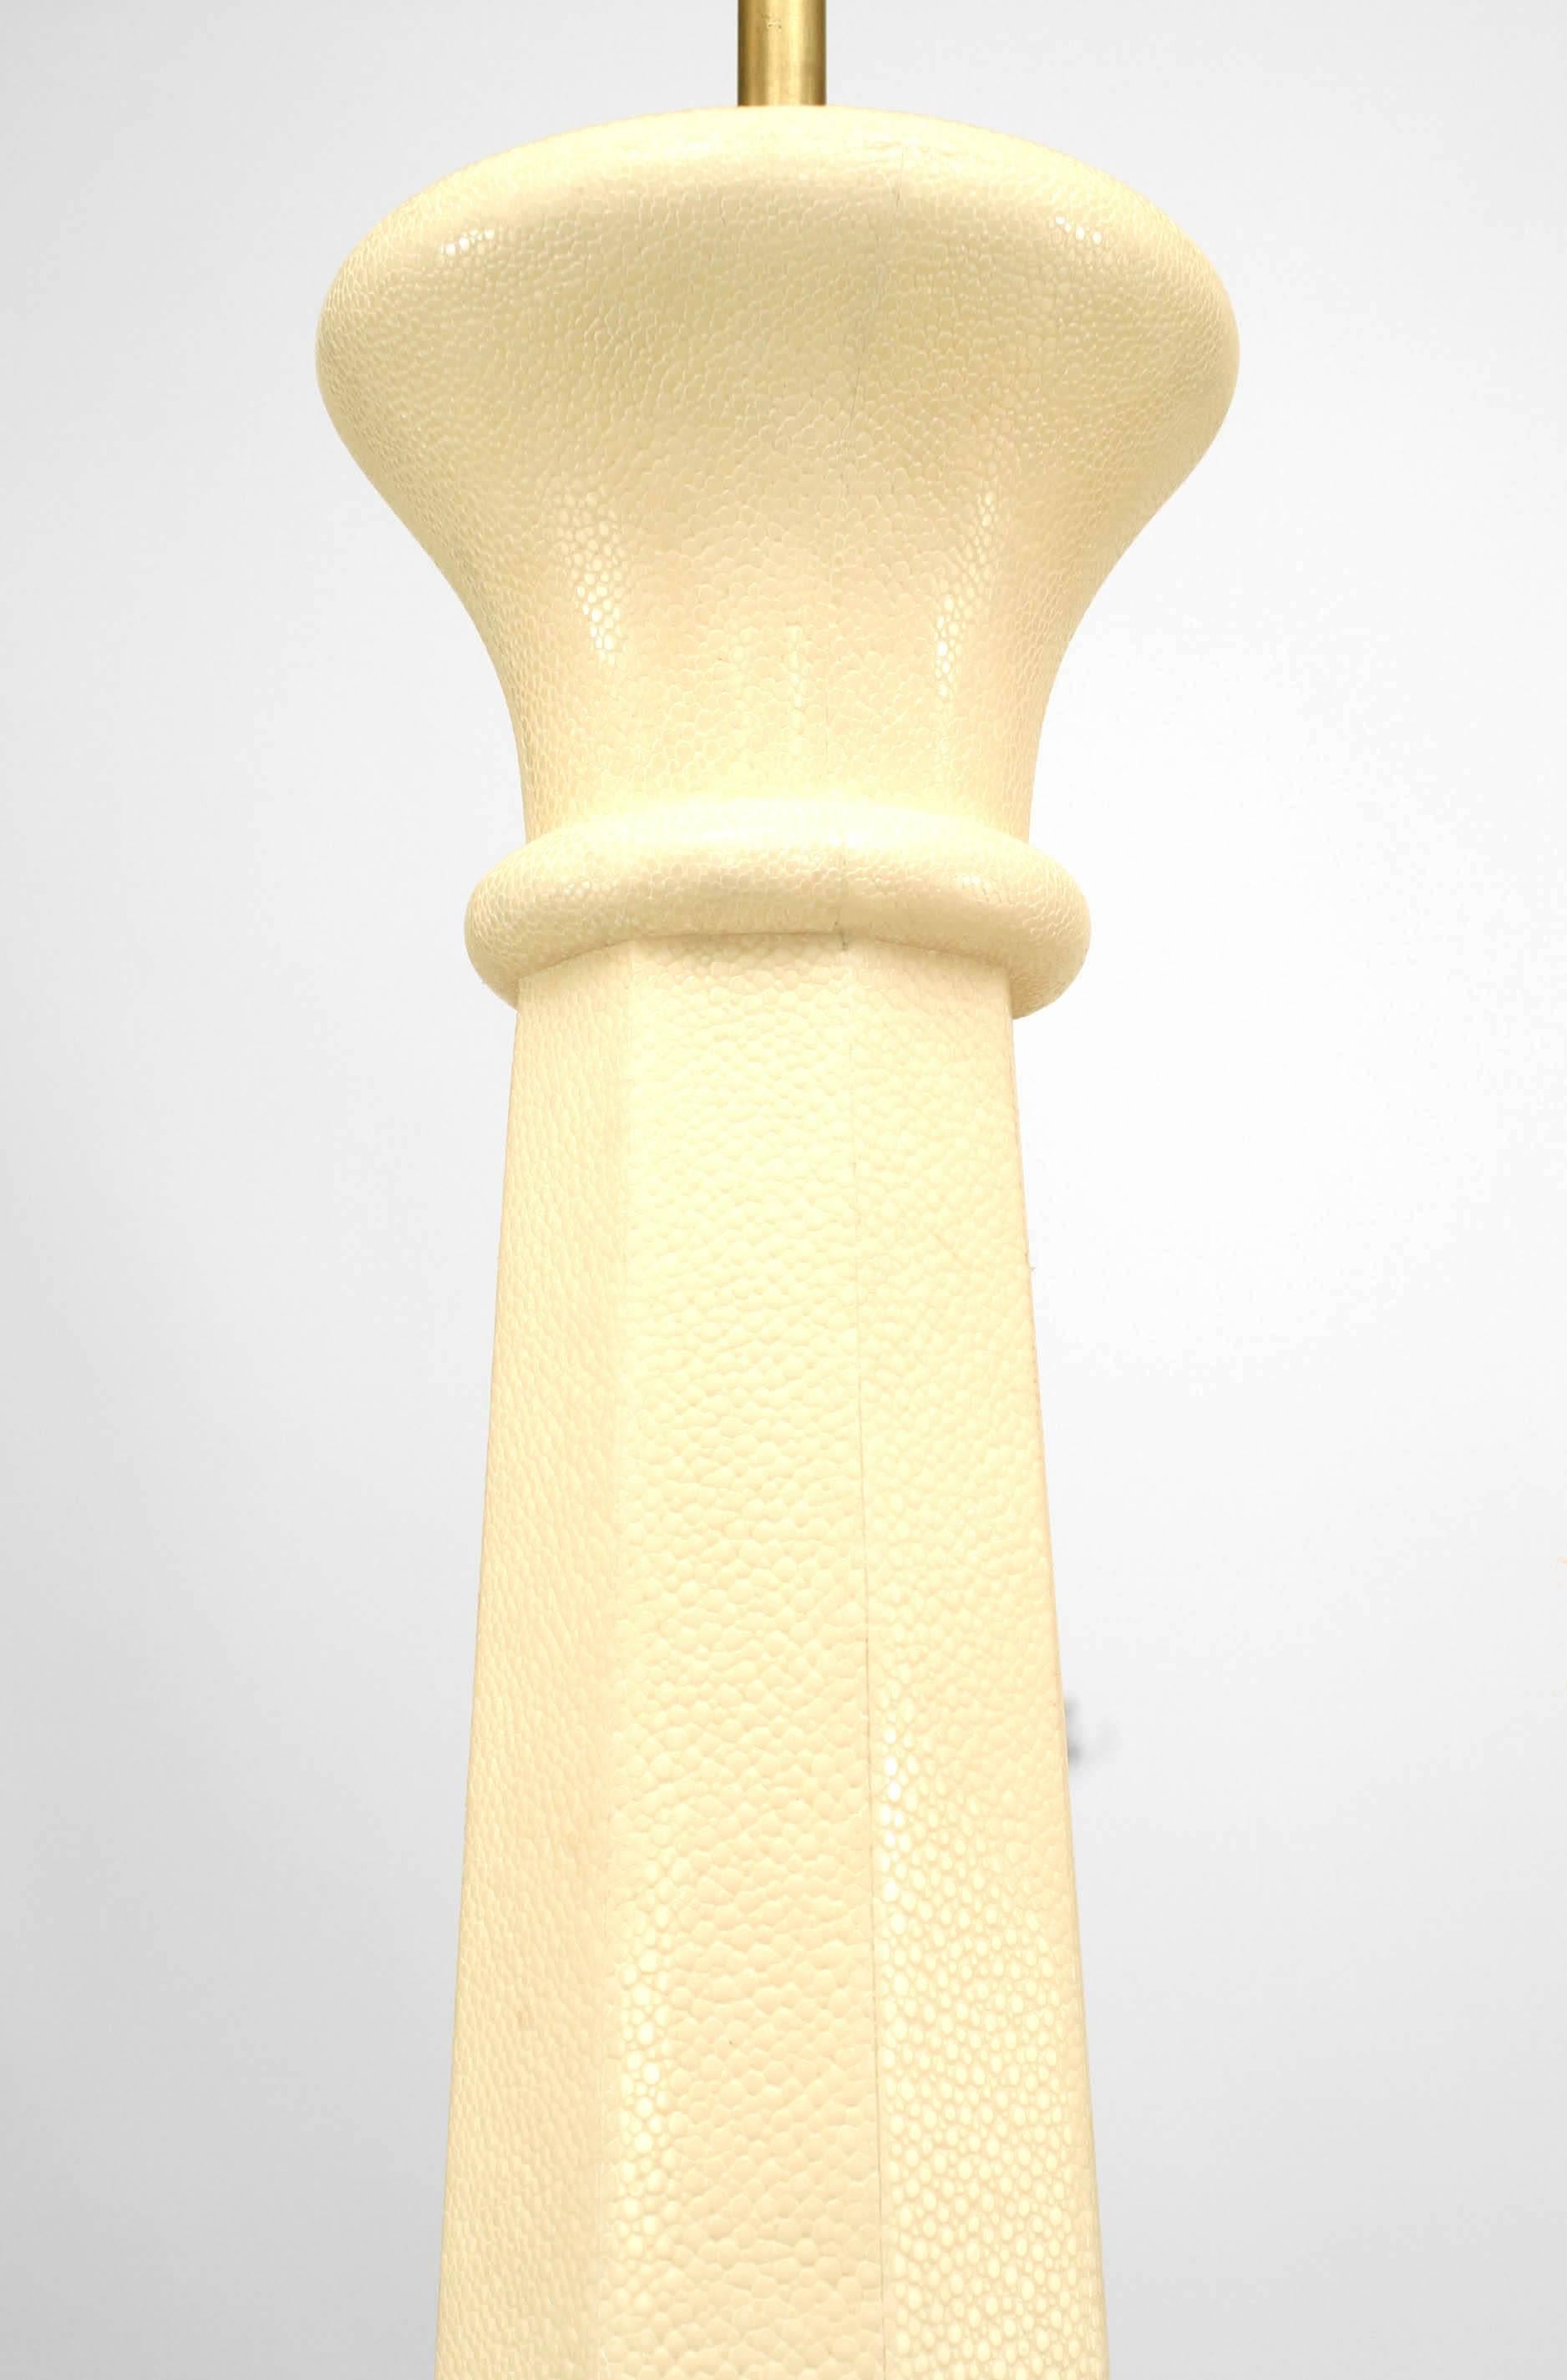 Lampe de table de style Art Déco français en galuchat blanc et incrustations d'os, de forme octogonale effilée.
